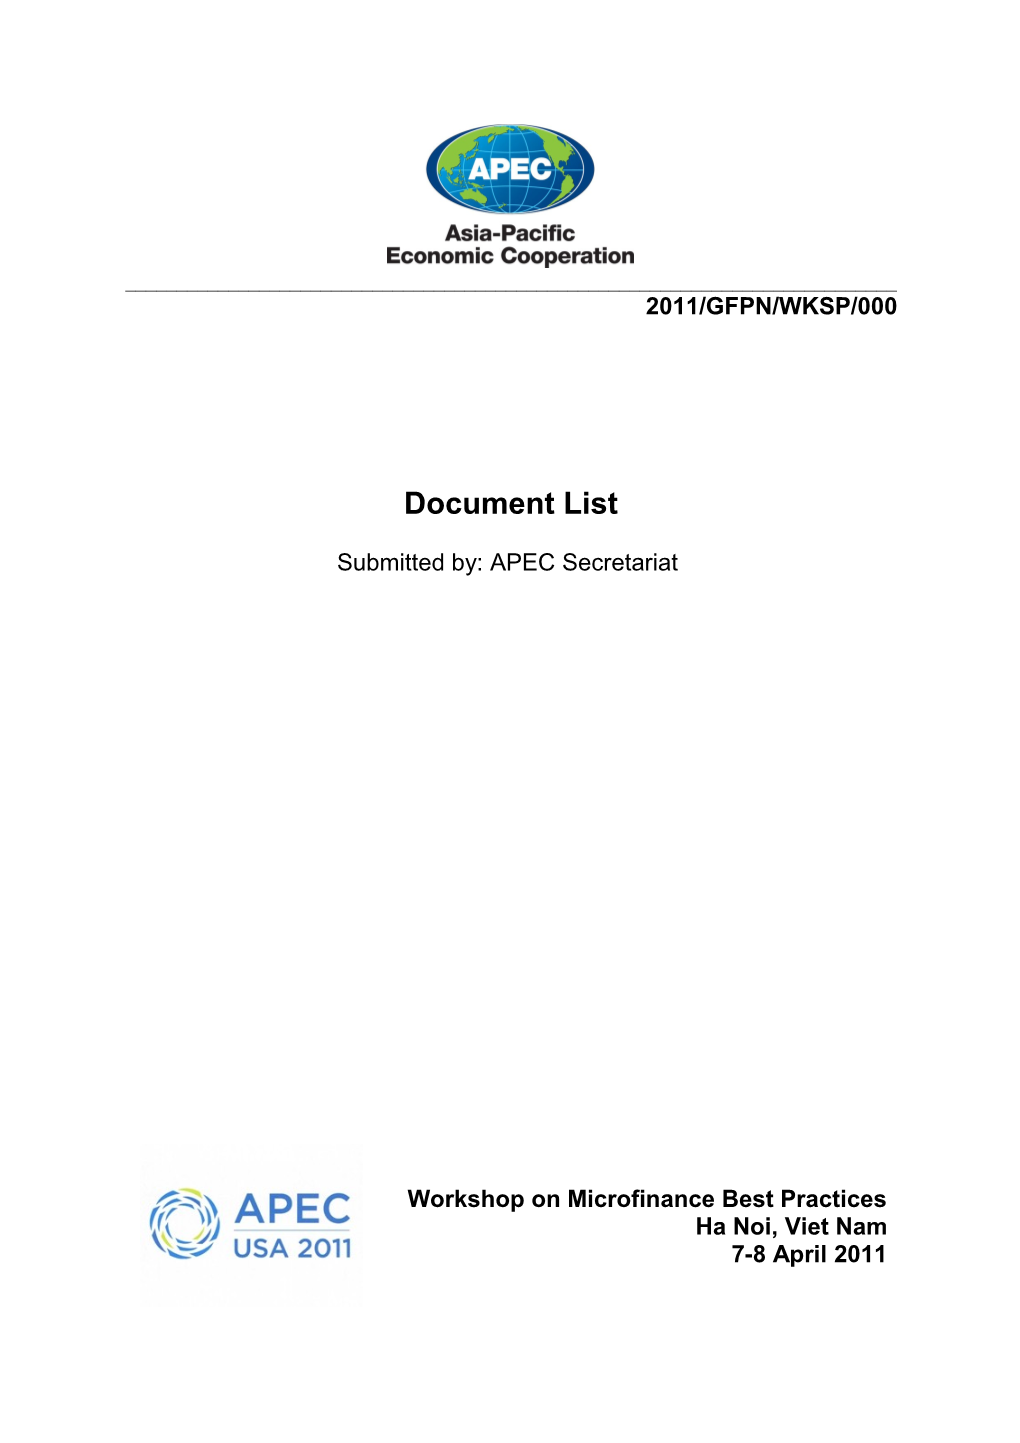 APEC Meeting Documents s8